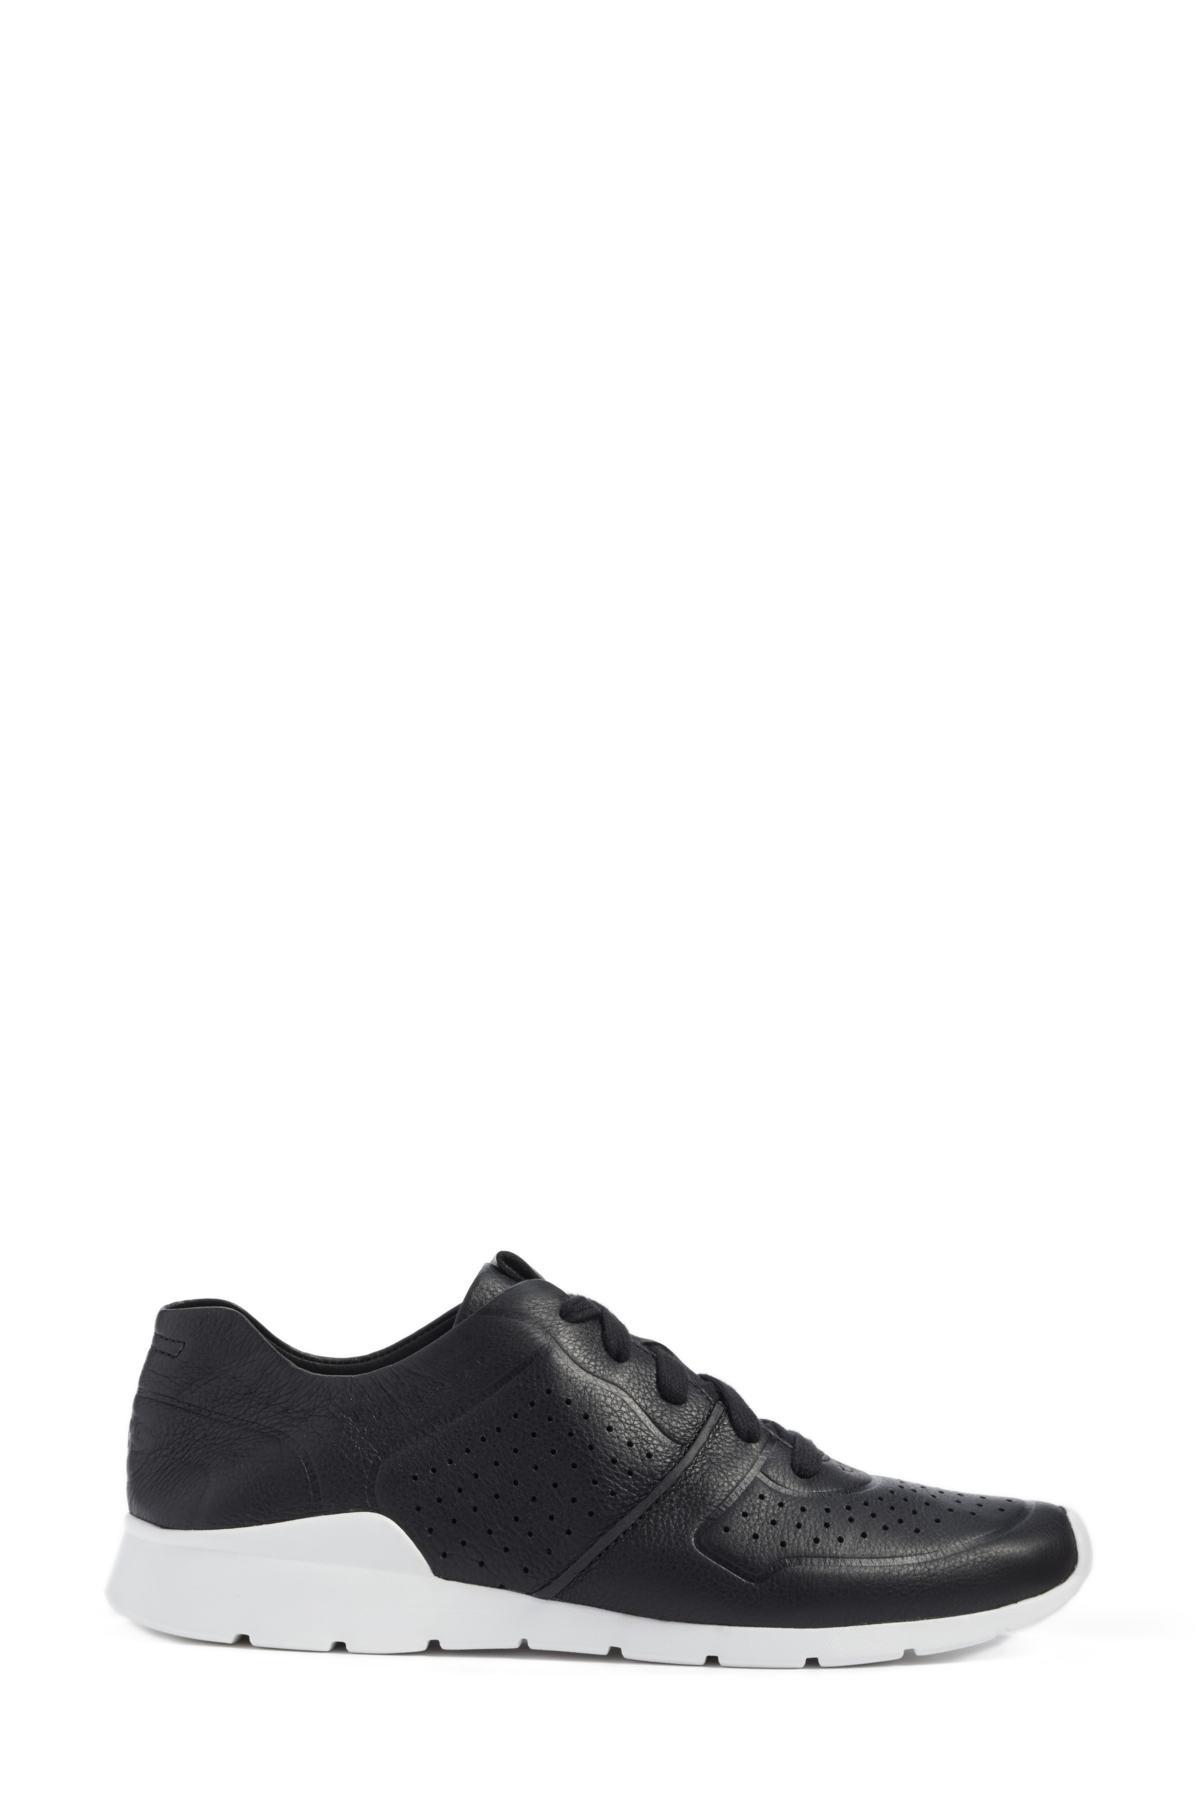 UGG Leather Tye Sneaker in Black | Lyst